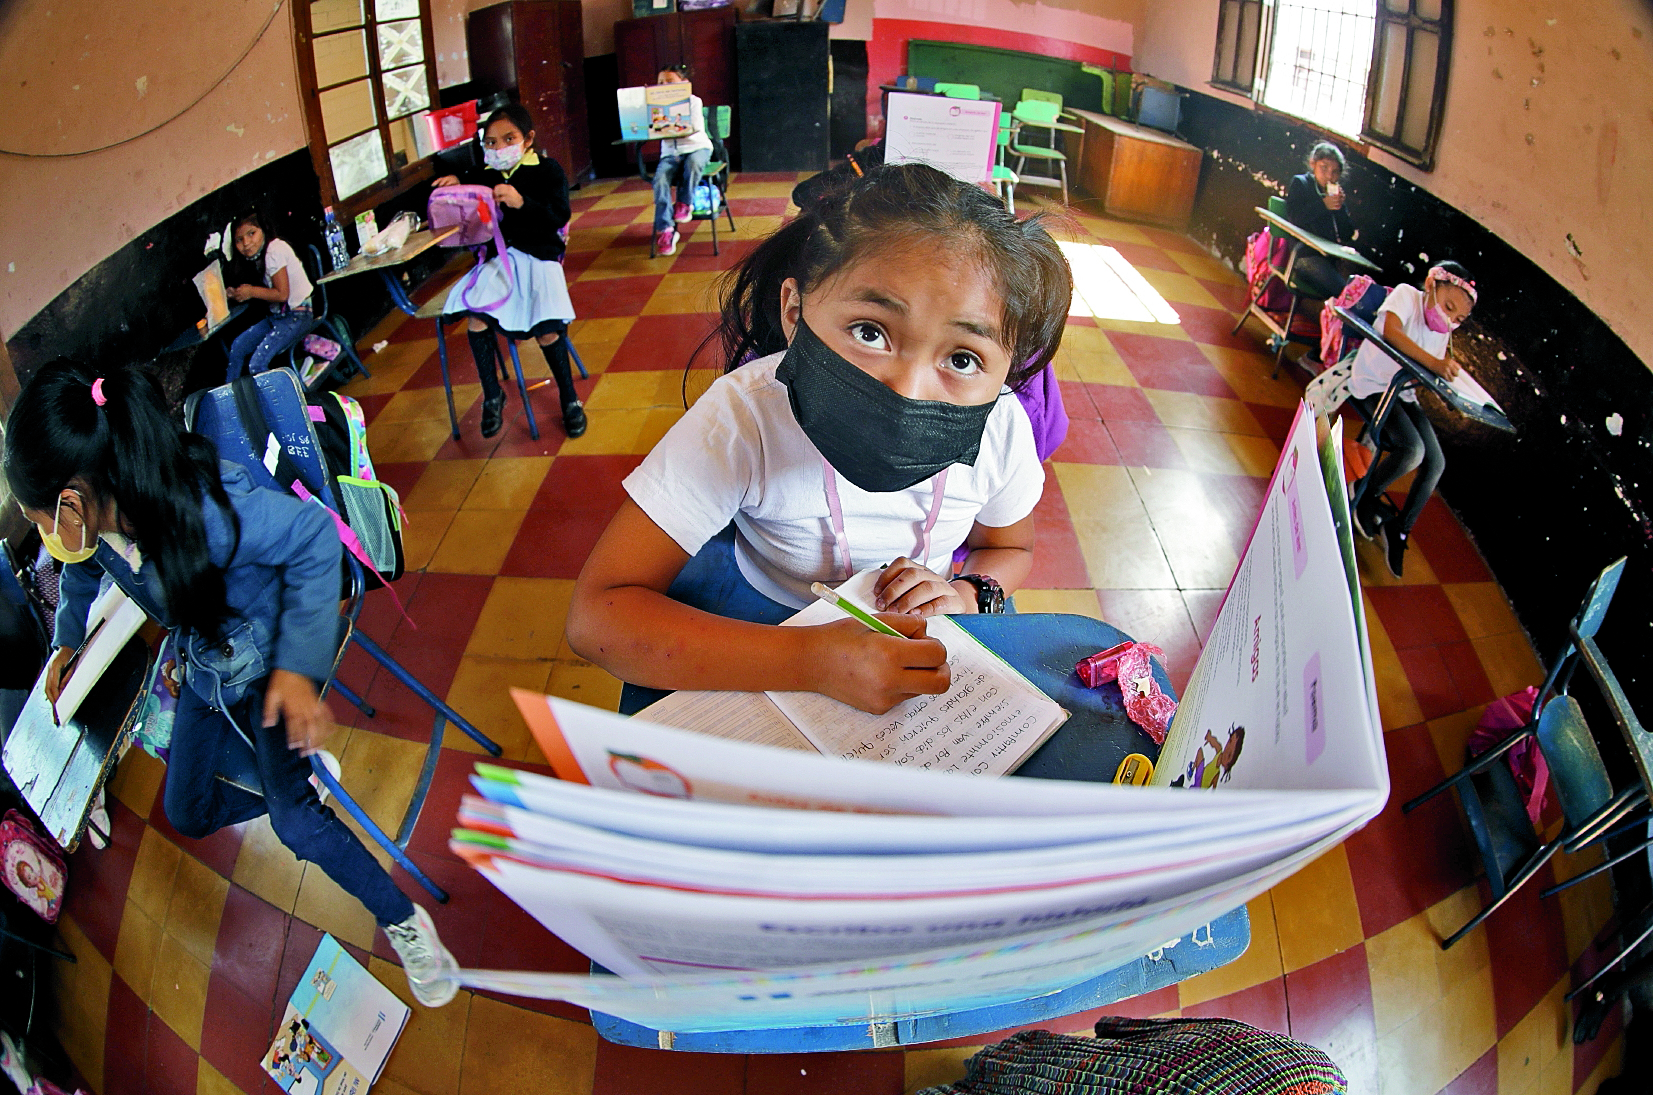 El cierre prolongado de clases en los establecimientos educativos debido a la pandemia del covid-19 ocasionó un rezago educativo. (Foto Prensa Libre: Hemeroteca PL)